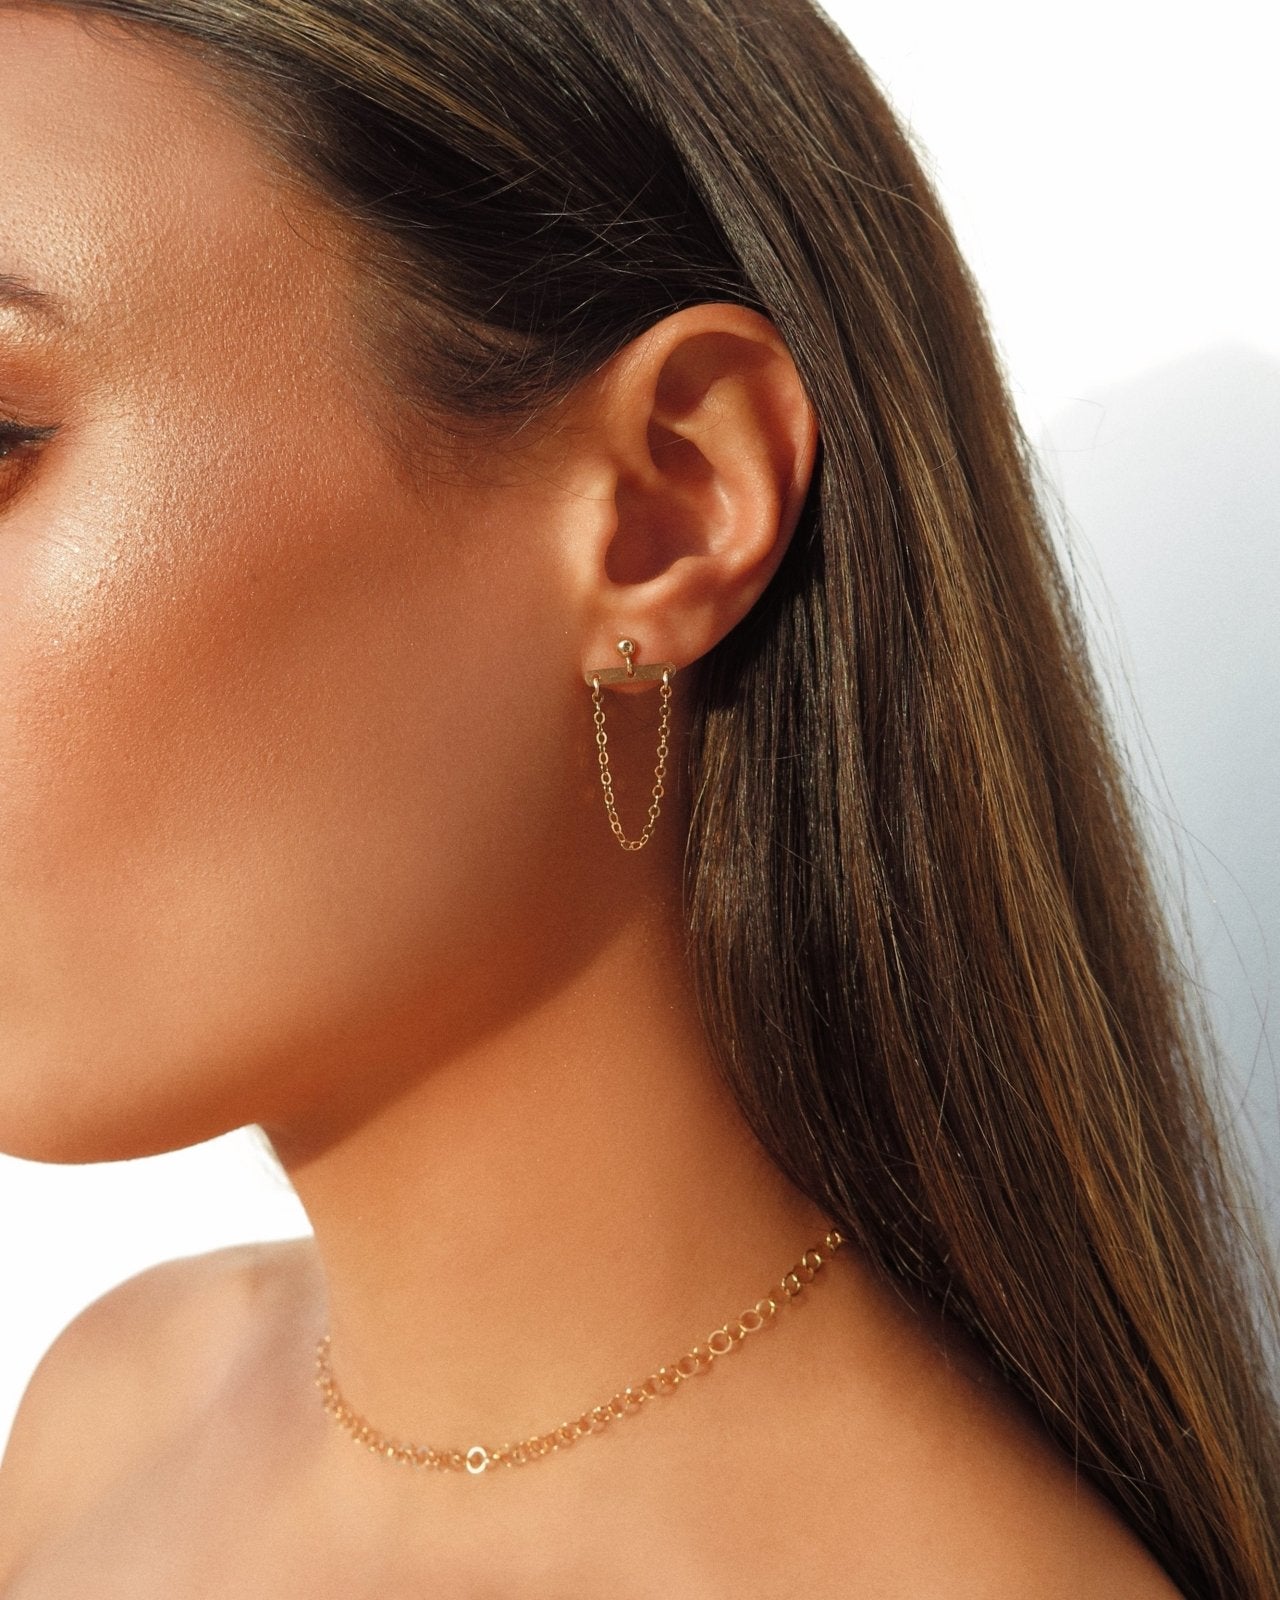 HANGING CHAIN EARRINGS - The Littl A$ A$ 14k Yellow Gold Drop Earrings  Earrings